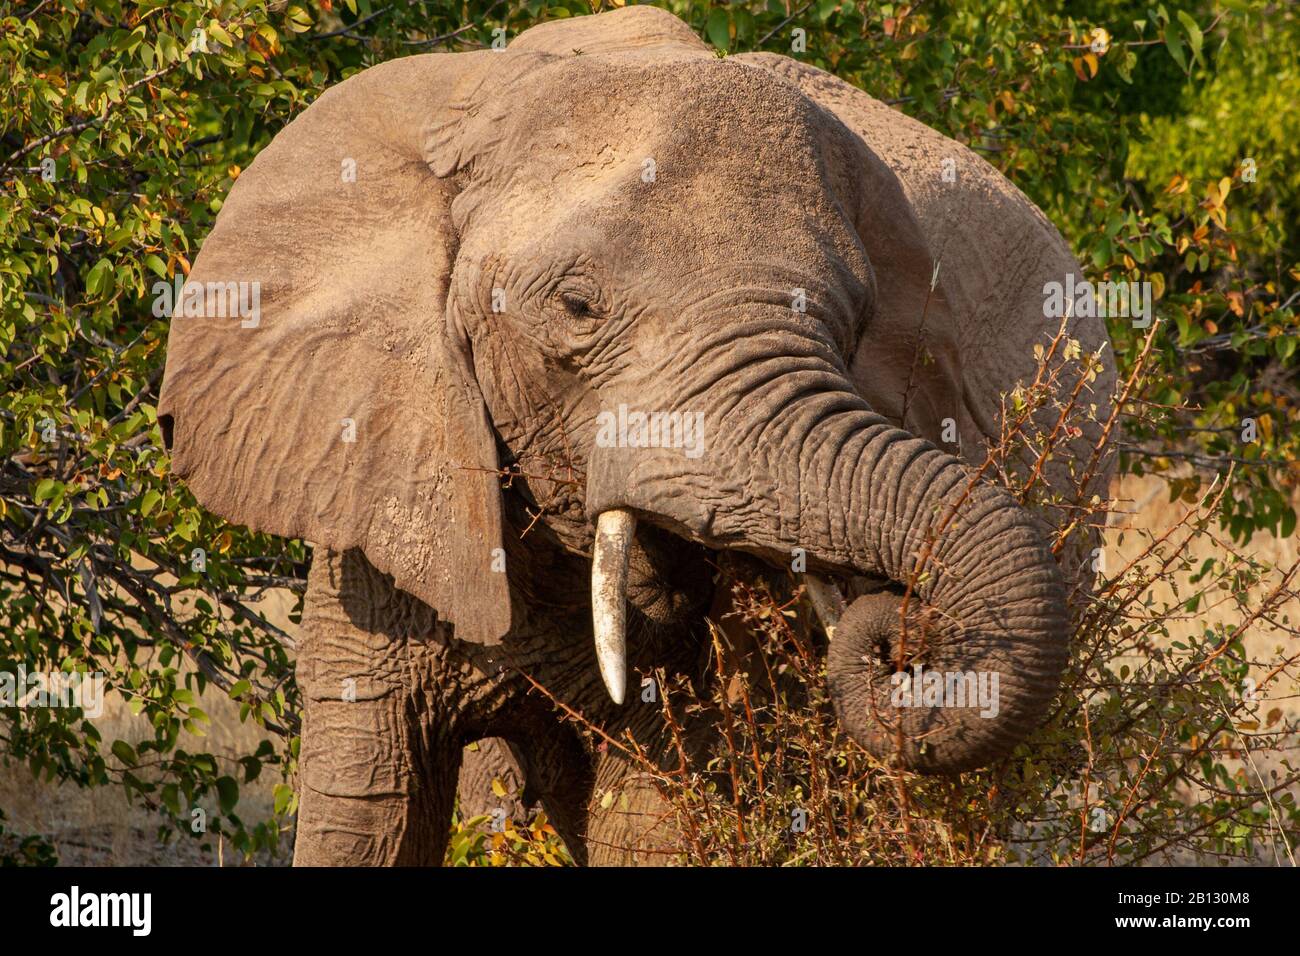 Close up portrait of Namibian Desert Elephant, loxodonta africana, in Damaraland, Namibia Stock Photo